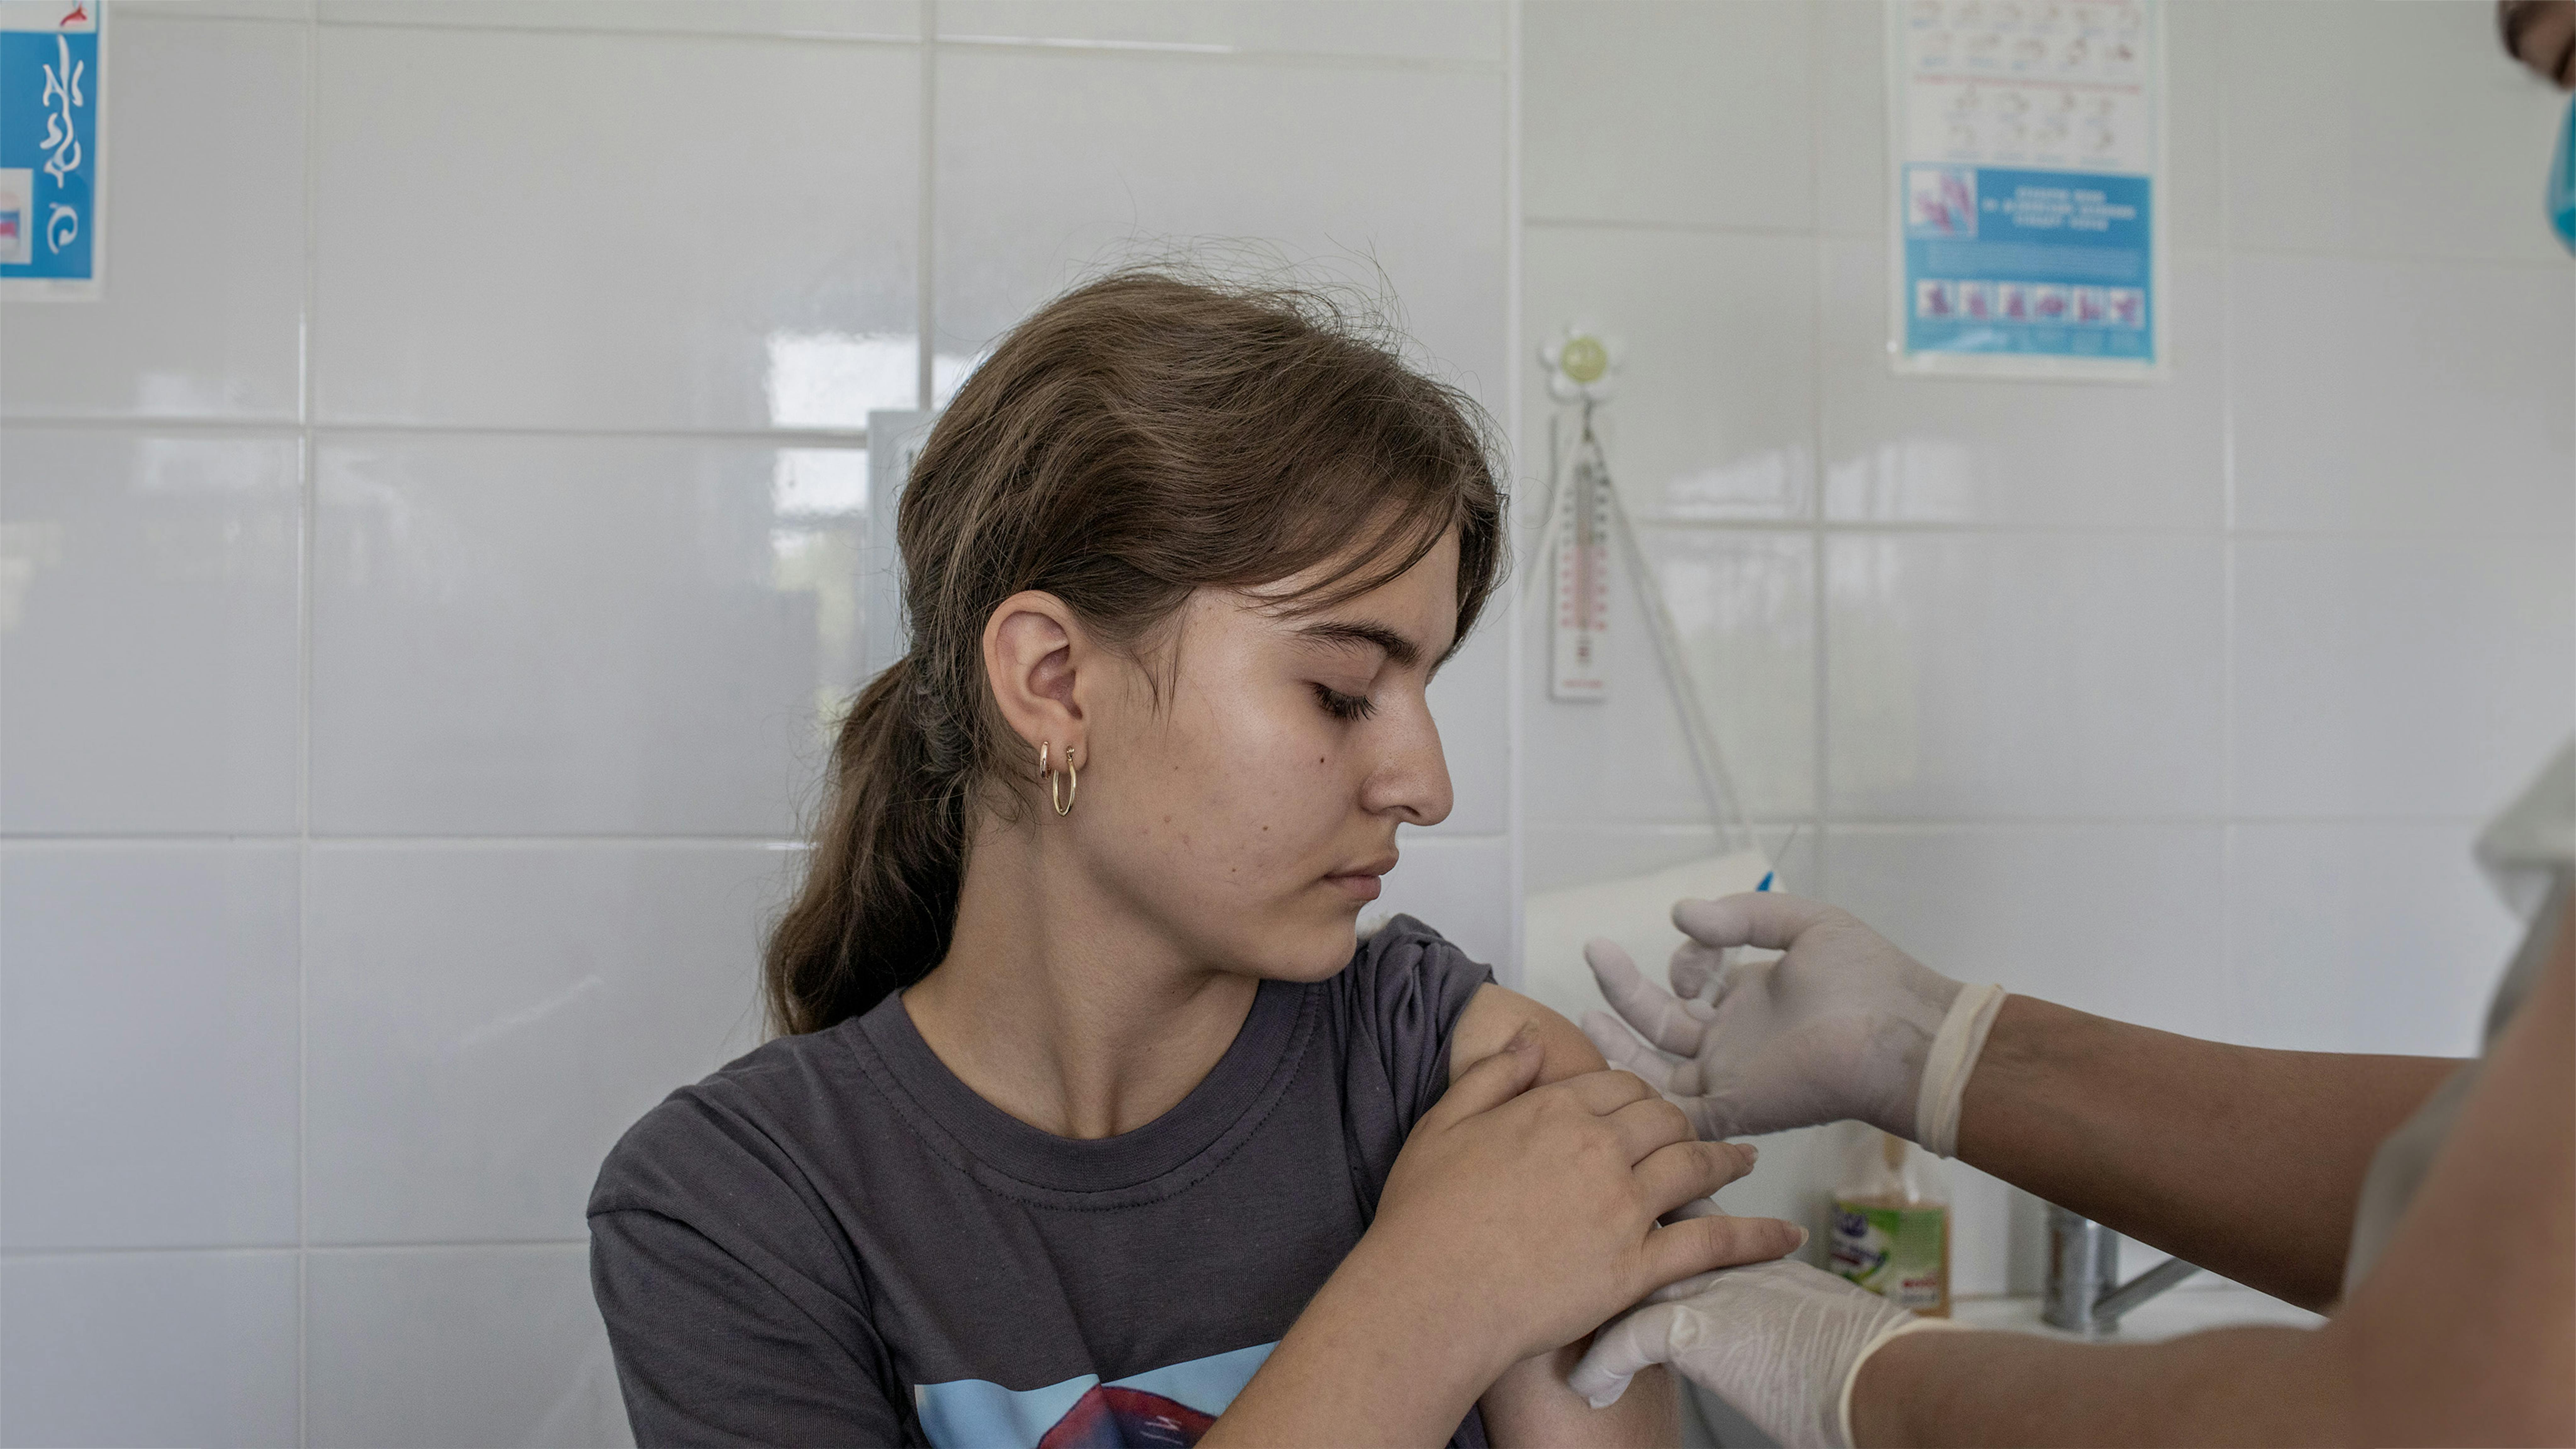 Asmina Vistina, 14 anni, riceve una dose di vaccino HPV, somministrata dall'infermiera vaccinatrice Shoira Gafurova, 54 anni, presso la Clinica familiare n. 2 della città di Samarcanda in Uzbekistan